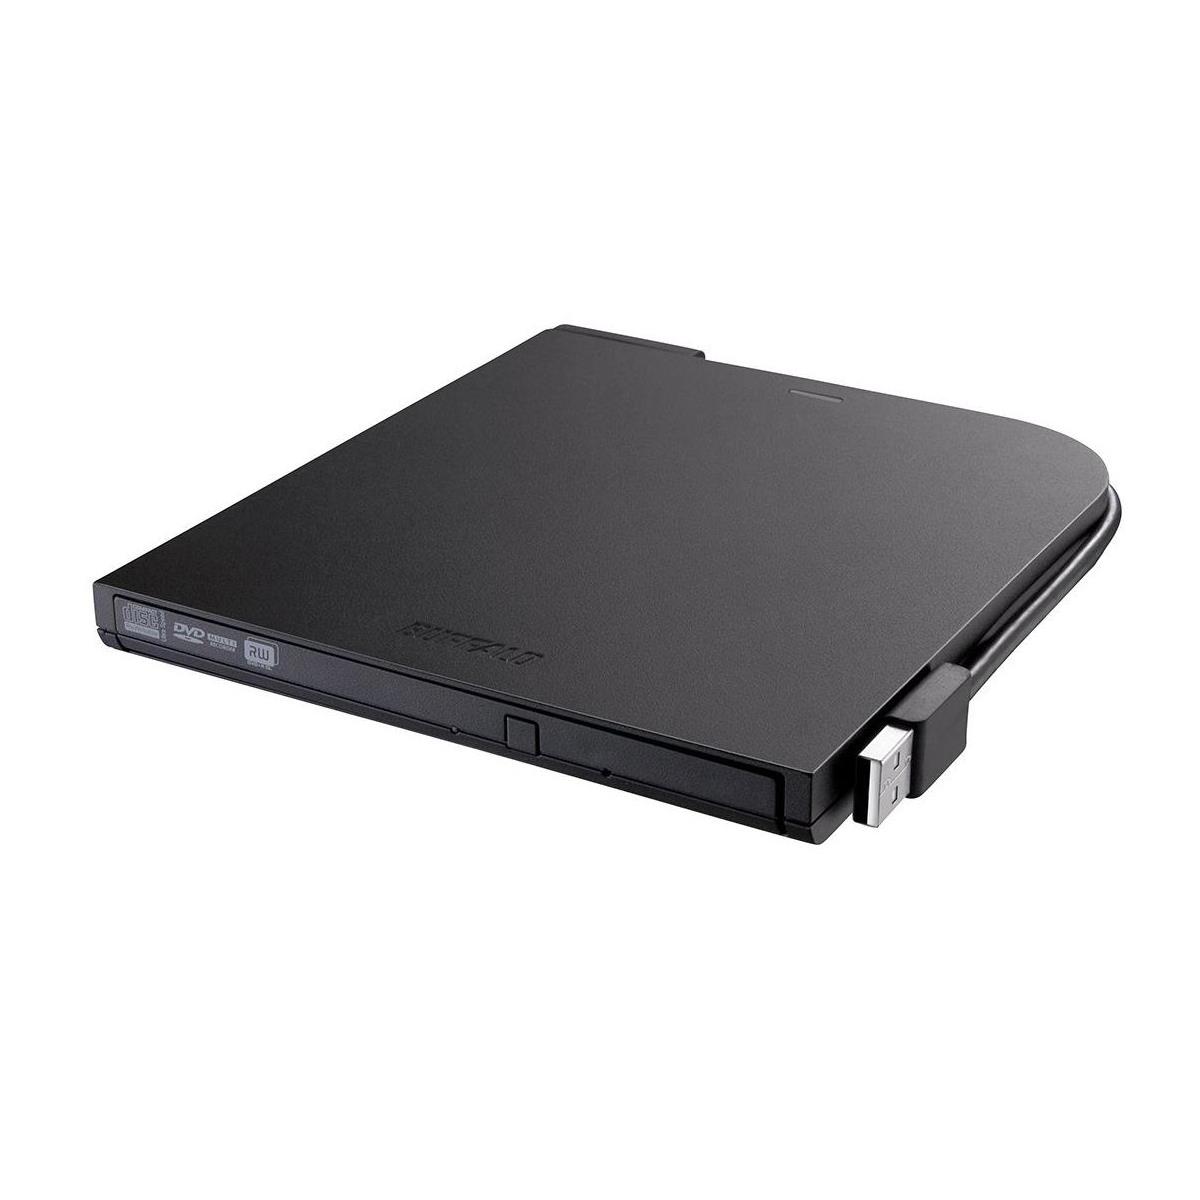 Image of Buffalo Technology MediaStation 8x USB 2.0 DVD Writer